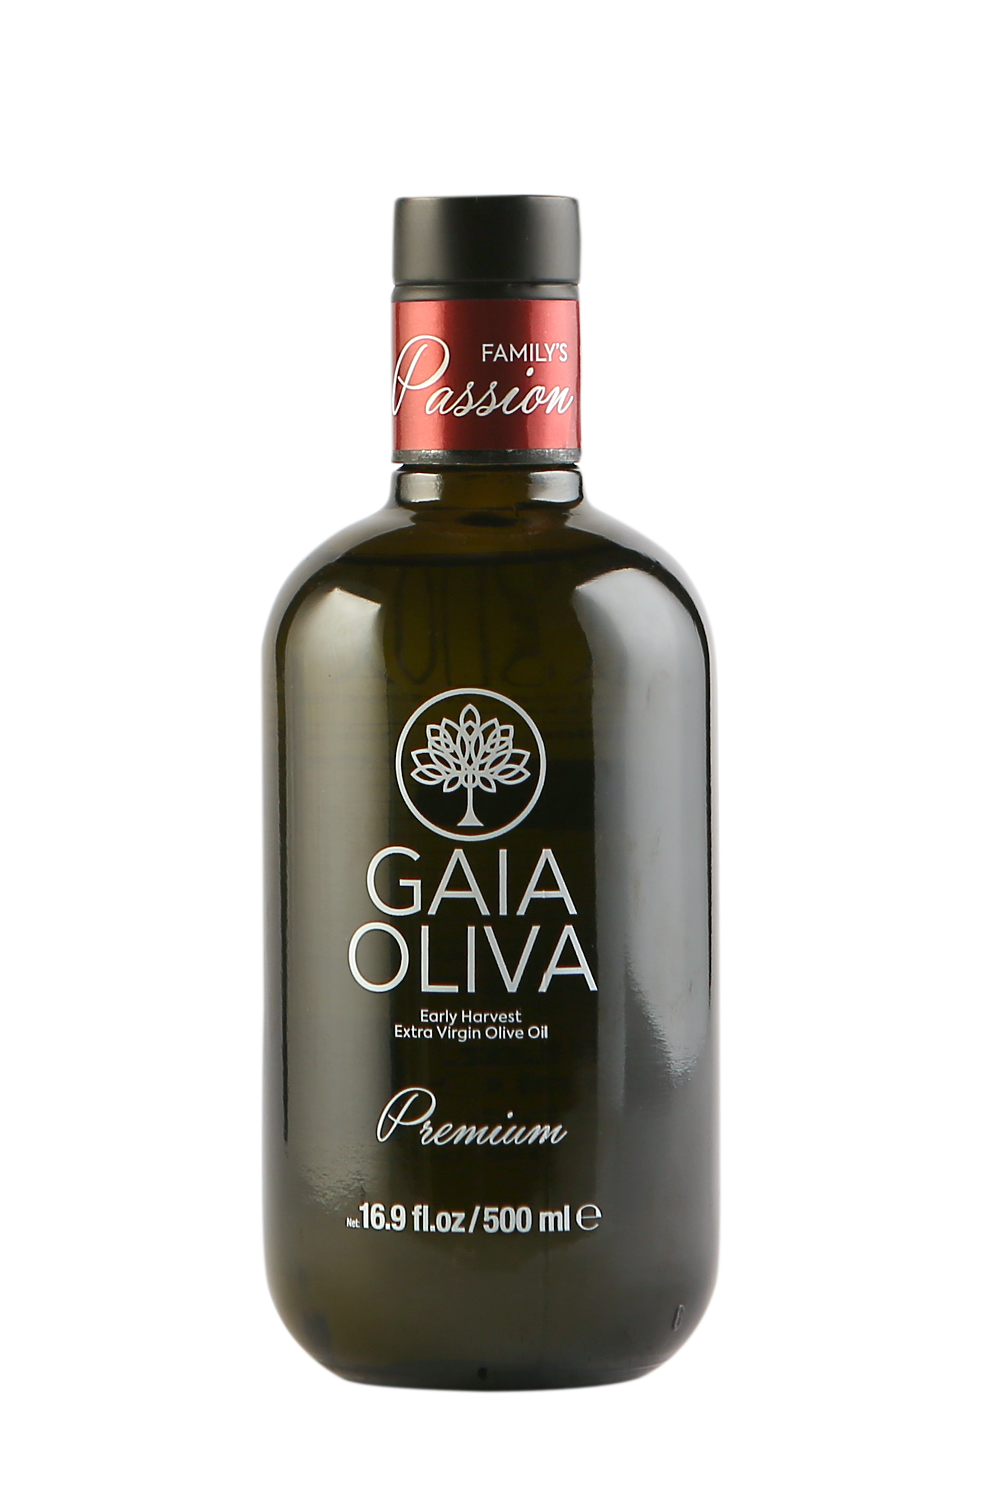  Gaia Oliva  Family's